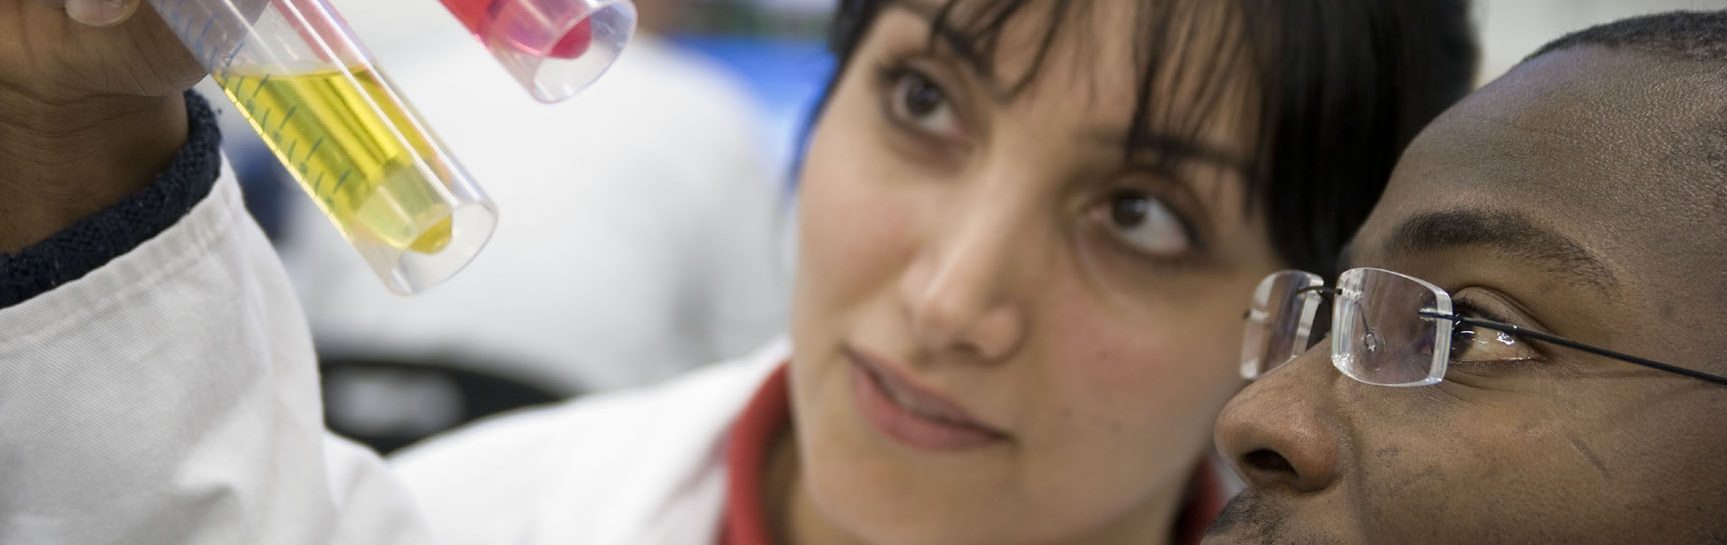 Zwei Personen im Labor schauen auf zwei Röhrchen mit verschiedenfarbiger Flüssigkeit